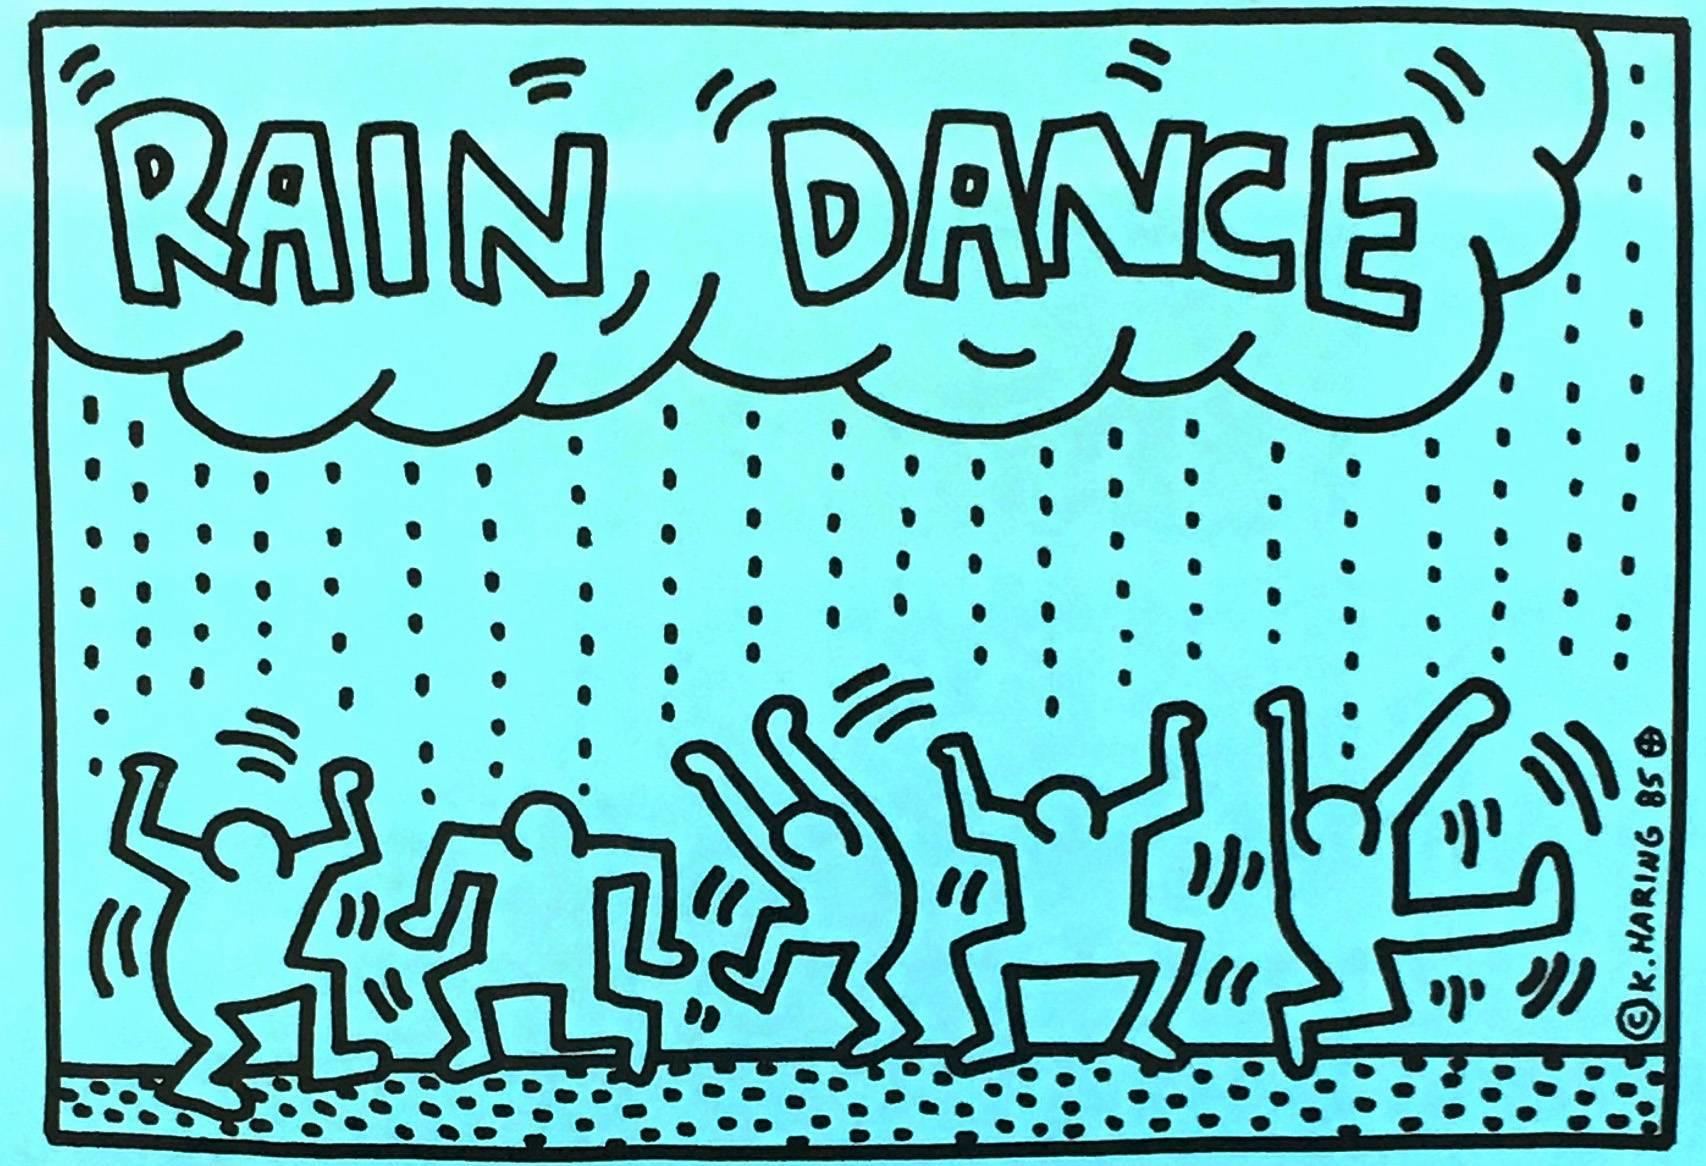 Keith Haring Rain Dance 1985 :
RARE affiche illustrée originale de Keith Haring des années 1980 annonçant une soirée de bienfaisance de Keith Haring pour l'UNICEF au légendaire Paradise Garage de Larry Levan en 1985. Un événement organisé par Keith